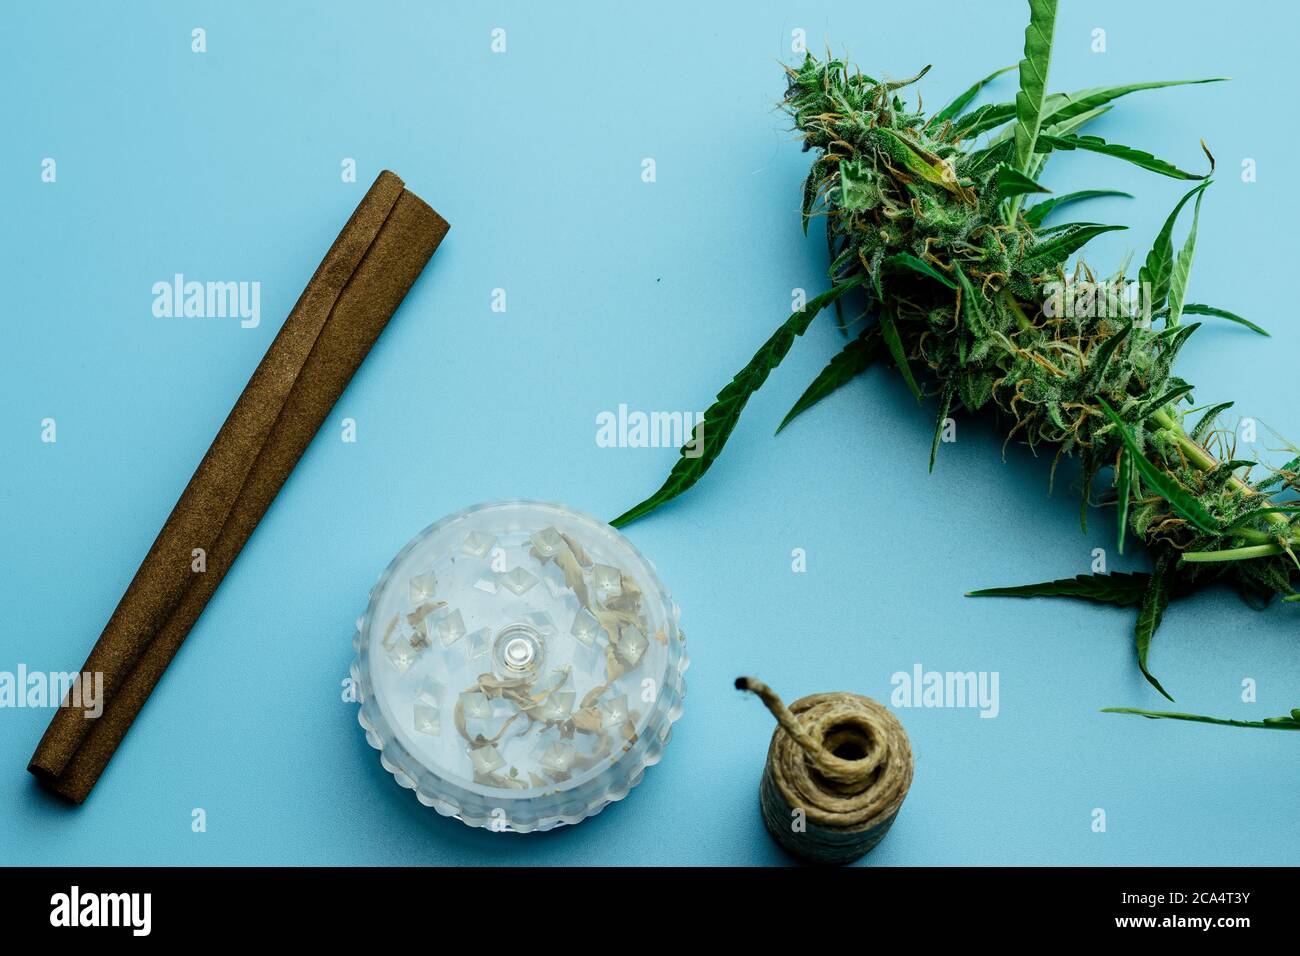 Accessori Di Cannabis Immagini e Fotos Stock - Alamy